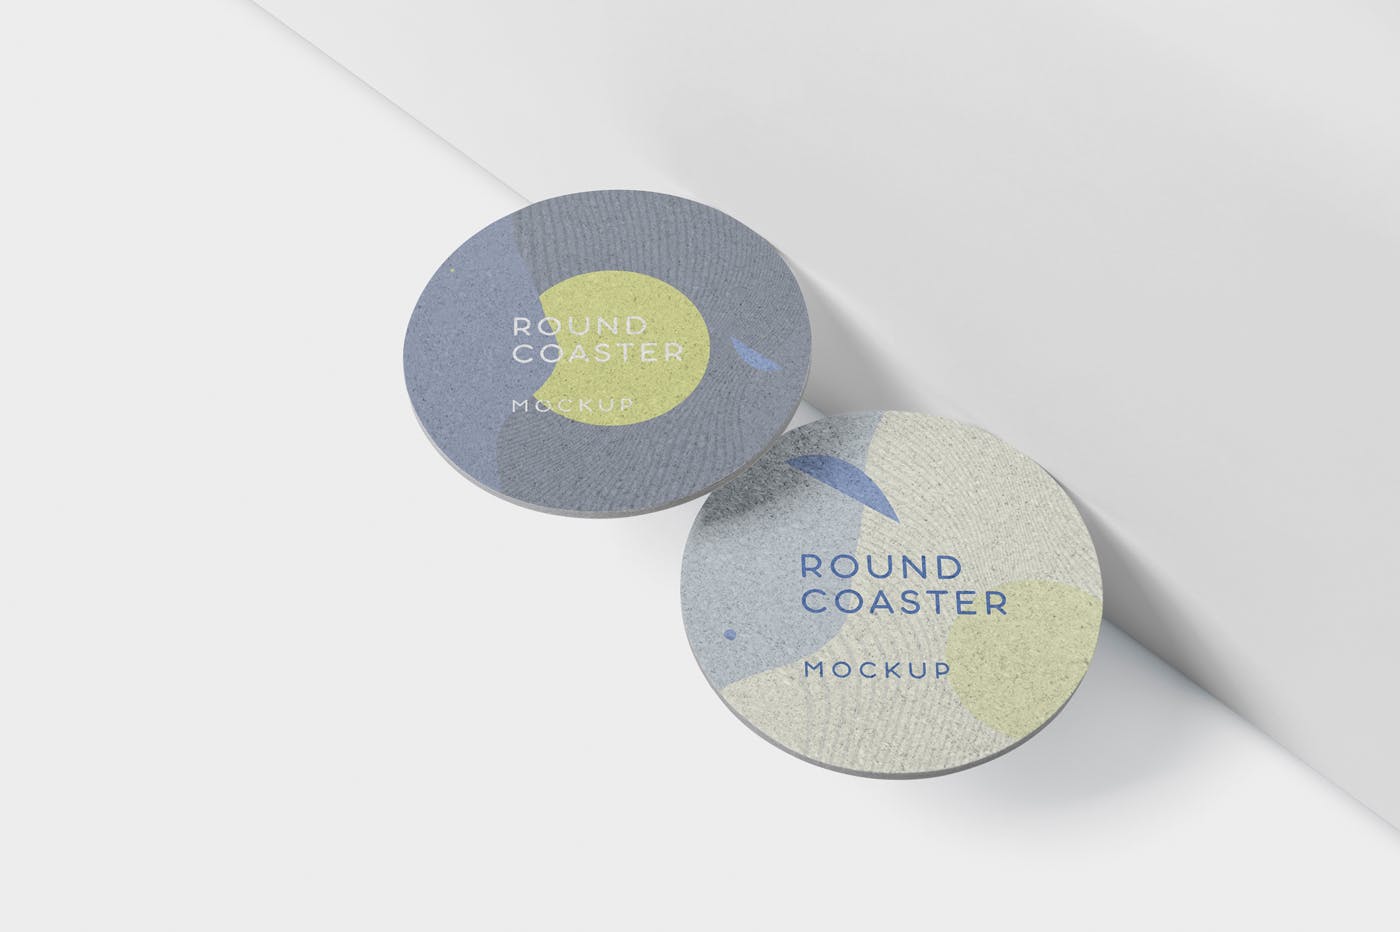 圆形杯垫图案设计效果图素材中国精选 Round Coaster Mock-Up – Medium Size插图(4)